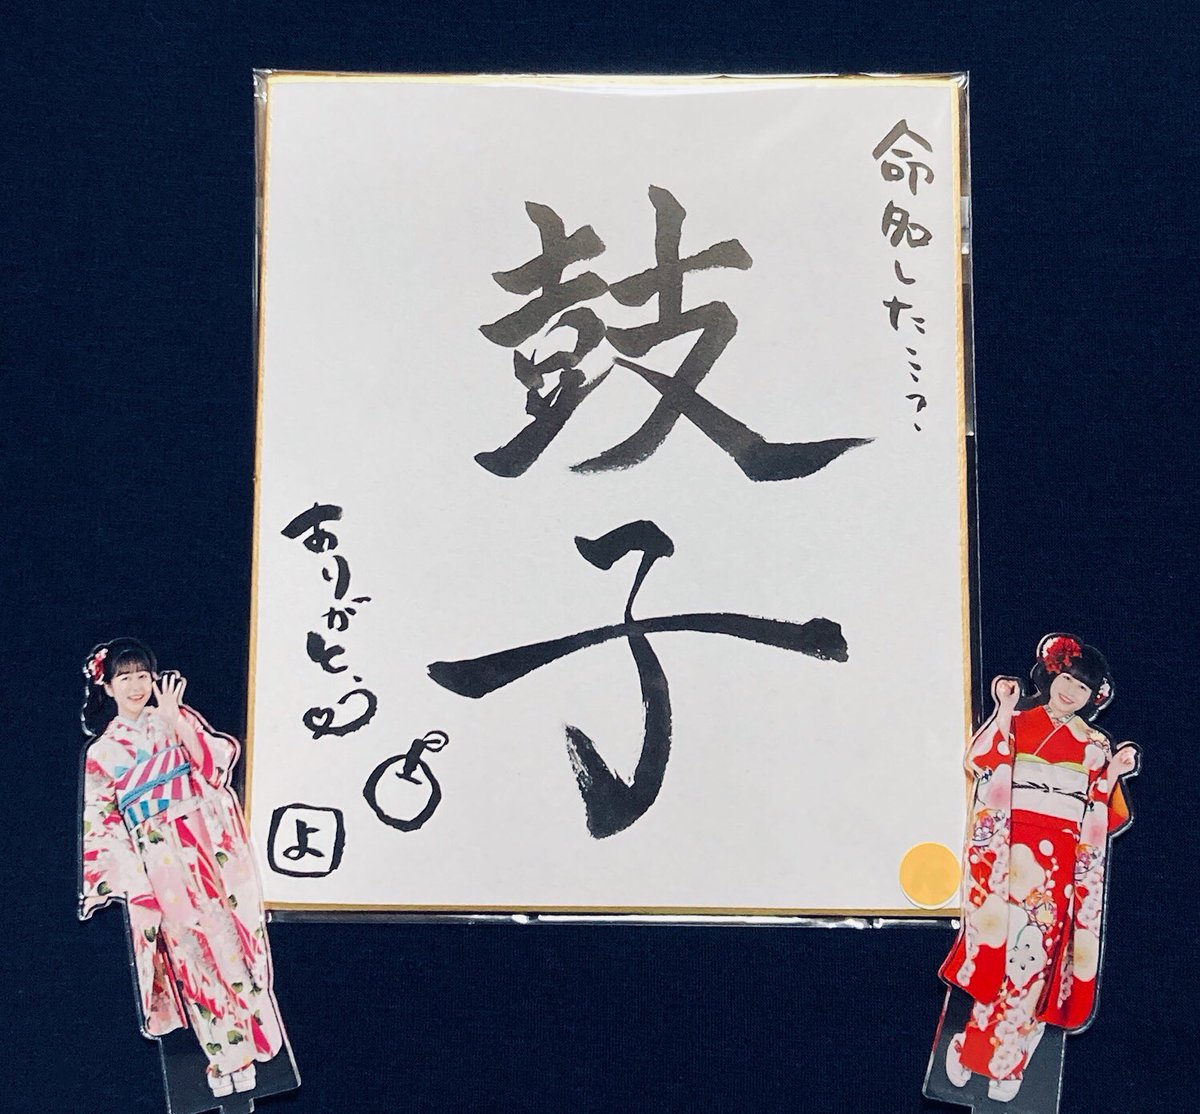 はやまる、#よぴちゃれ忘年会 のイベント内プレゼント抽選でGETした青山吉能さん直筆色紙だよ…………。

#ココ・シャベル
#よぴちゃれ 